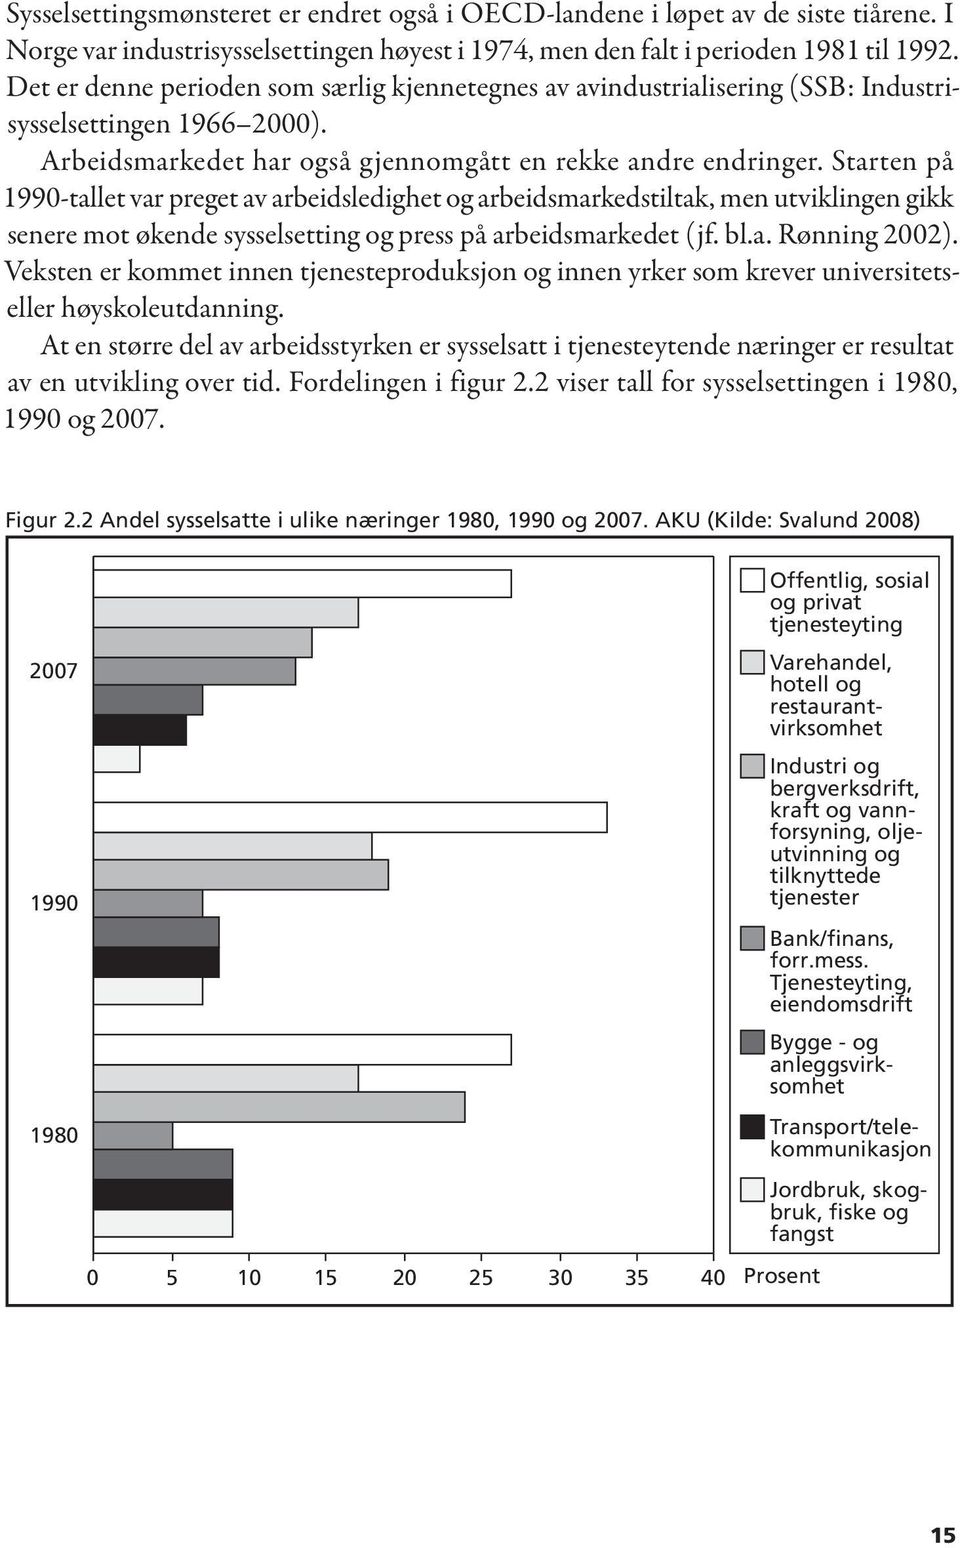 Starten på 1990-tallet var preget av arbeidsledighet og arbeidsmarkedstiltak, men utviklingen gikk senere mot økende sysselsetting og press på arbeidsmarkedet (jf. bl.a. Rønning 2002).